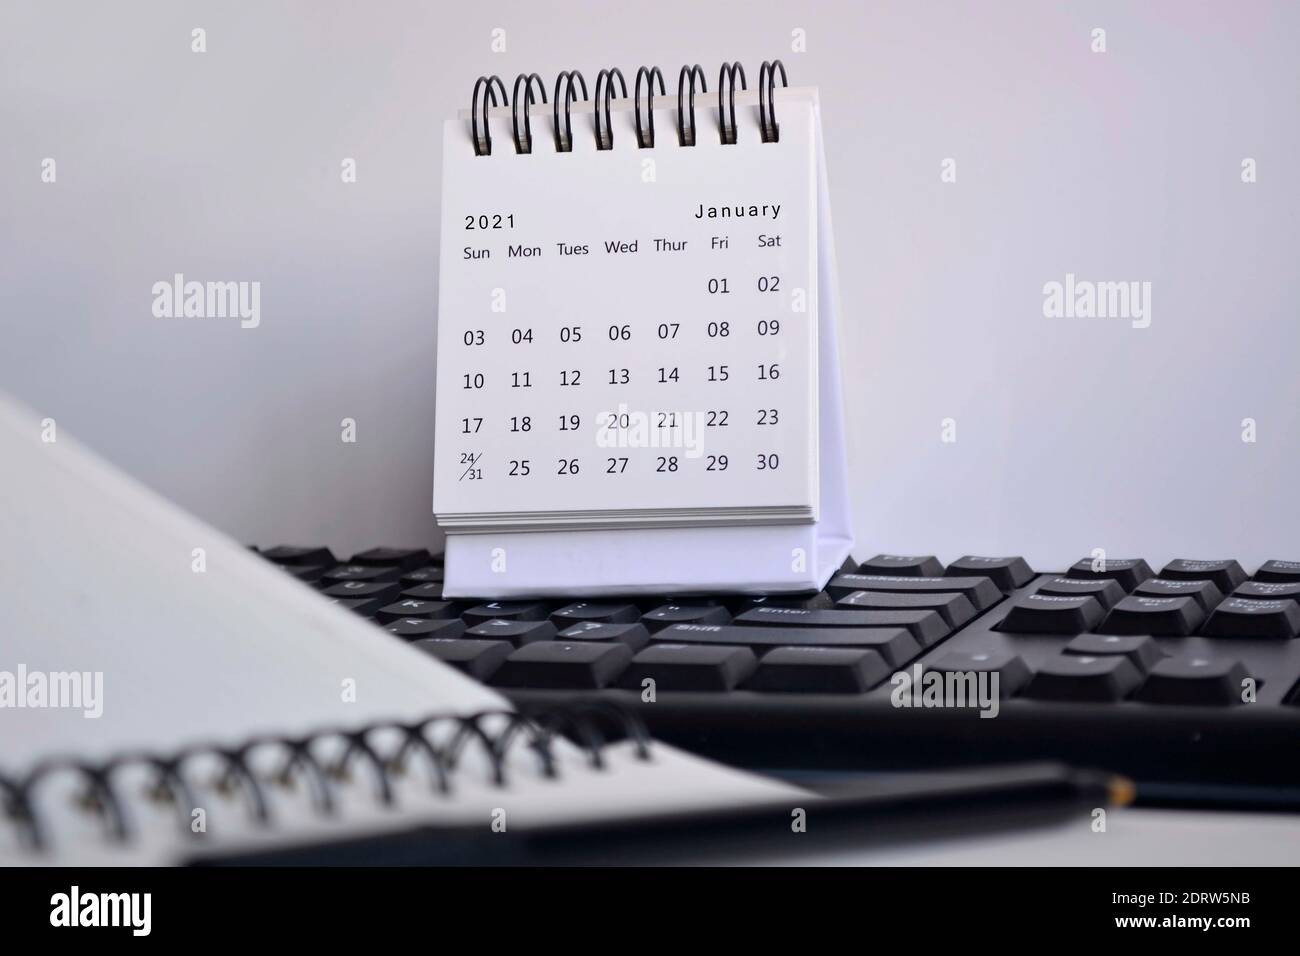 Calendrier blanc de janvier 2021 sur un clavier flou, suspension et ordinateur portable avec arrière-plan blanc. Concept de la nouvelle année Banque D'Images